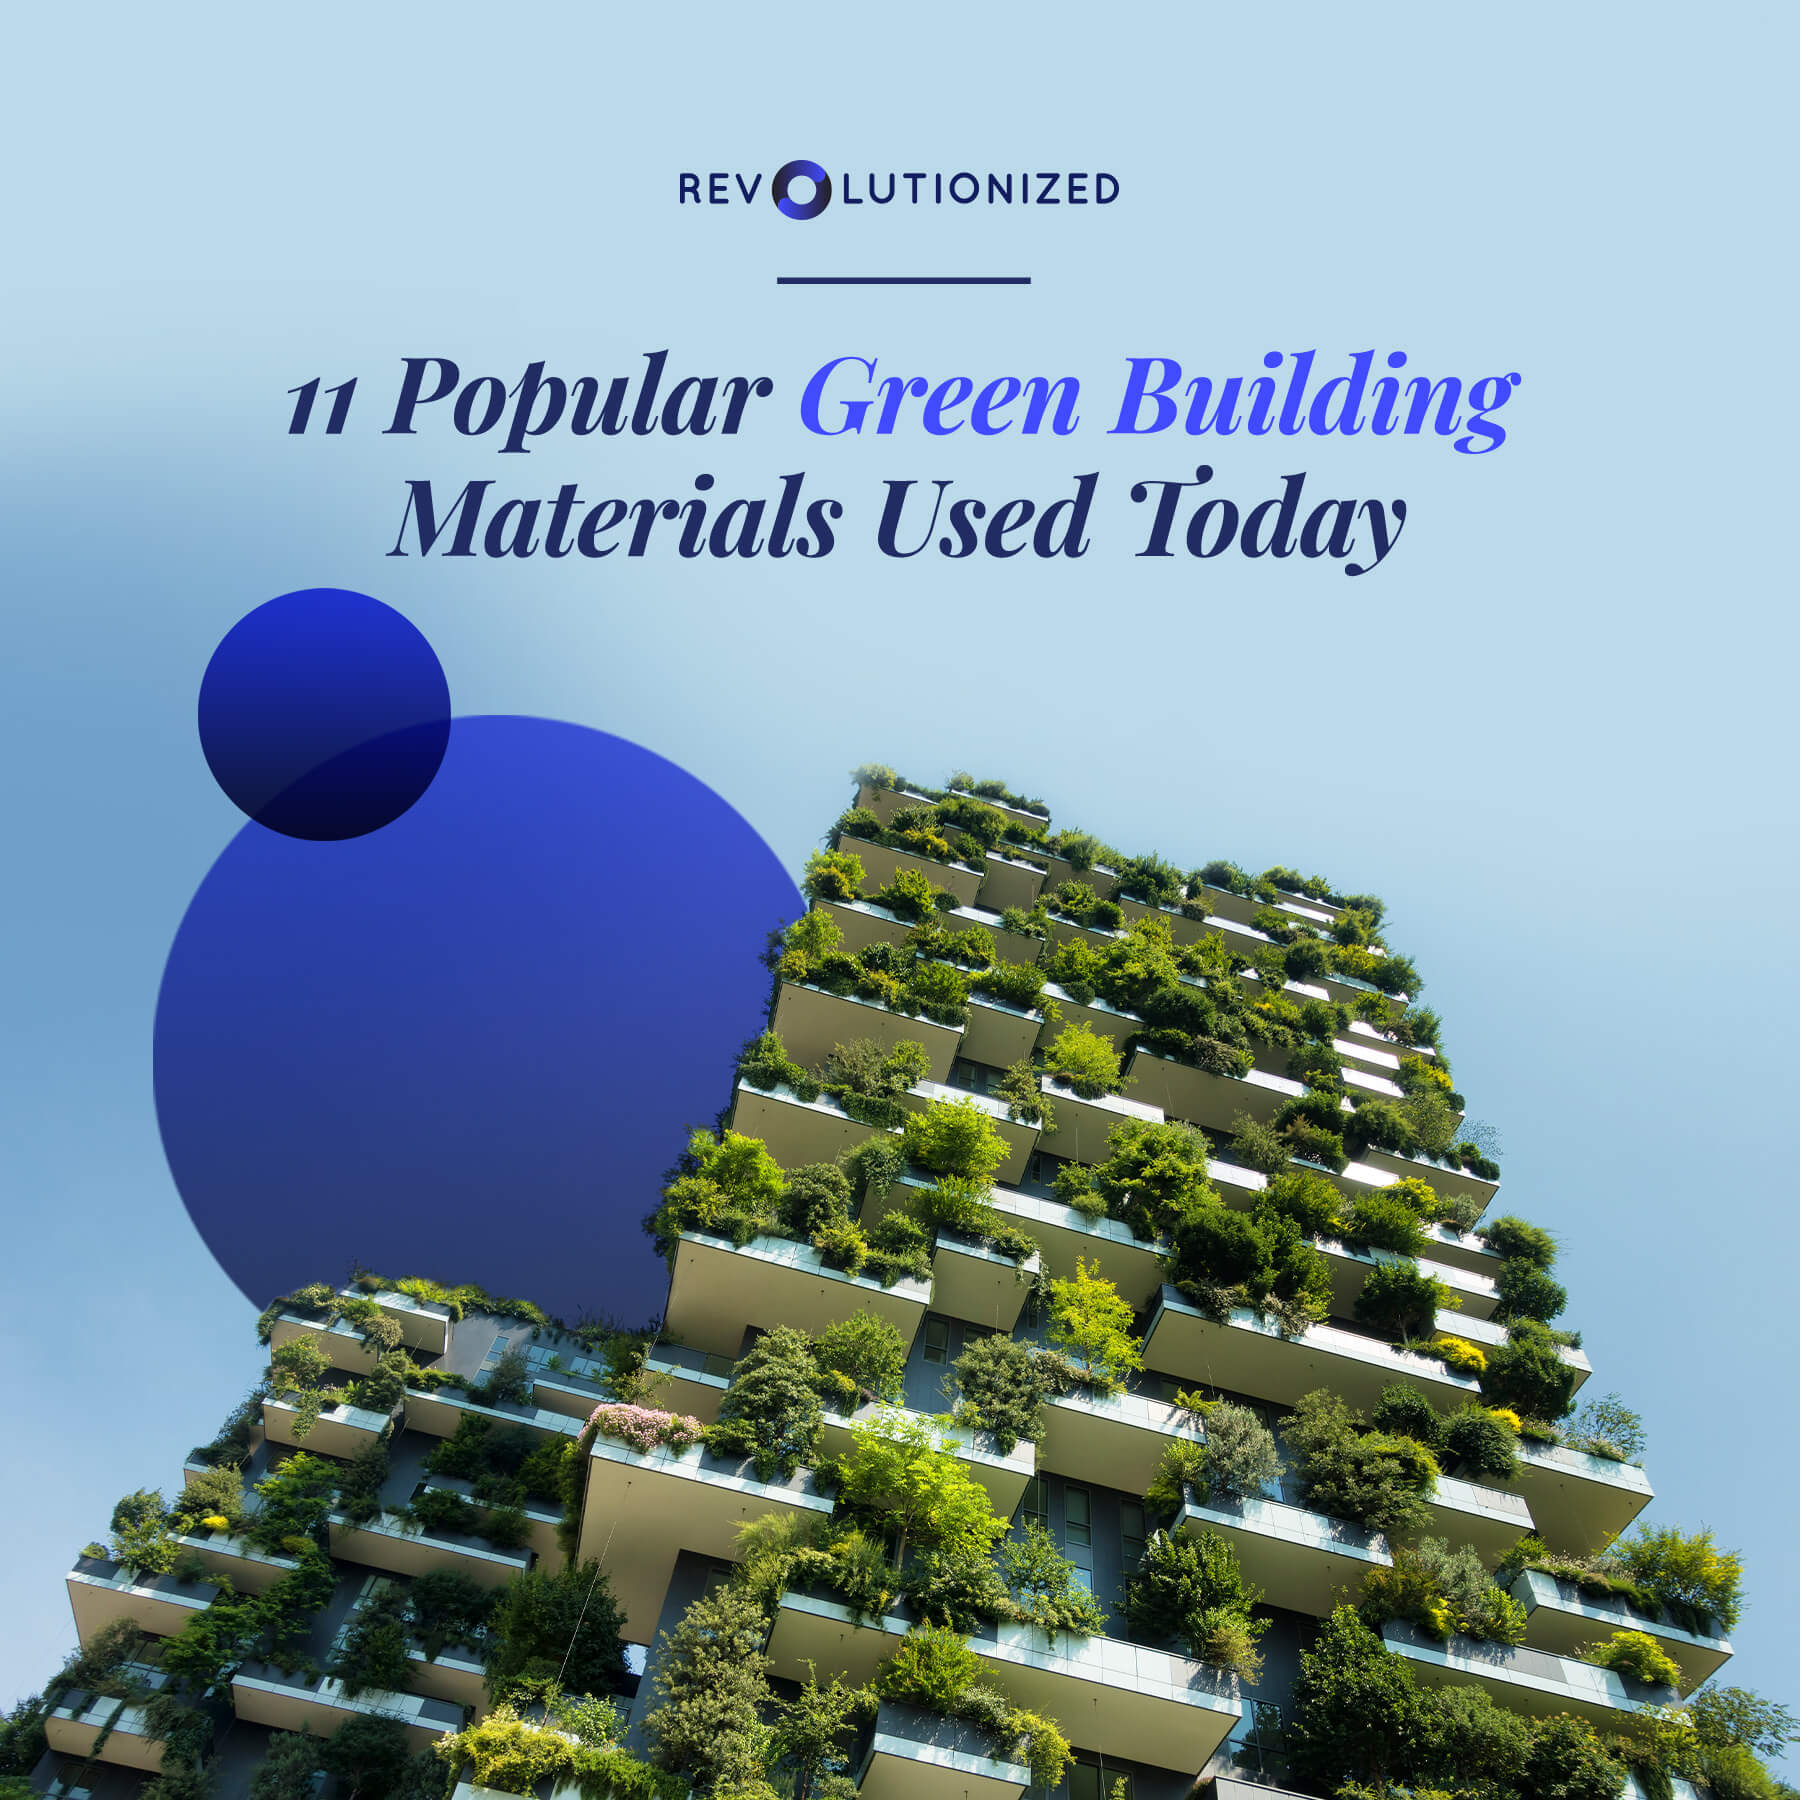 Green building materials